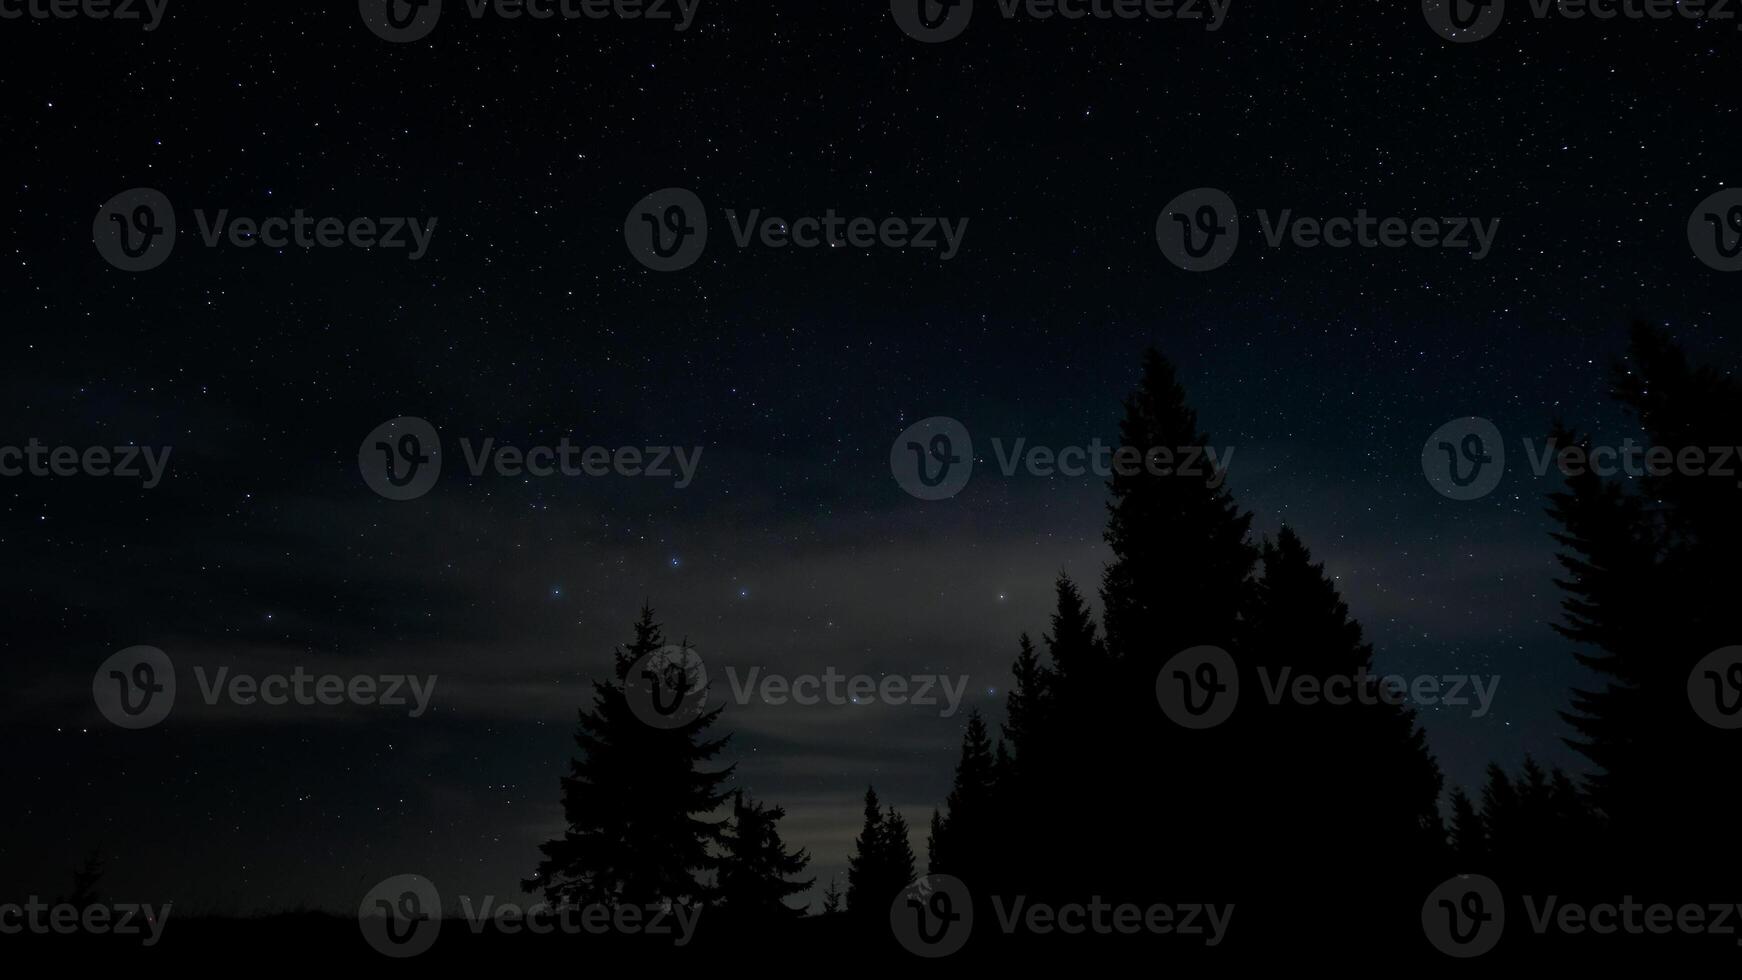 stjärnor i natt himmel över träd silhuetter. de konstellation ursa större är klart synlig. foto